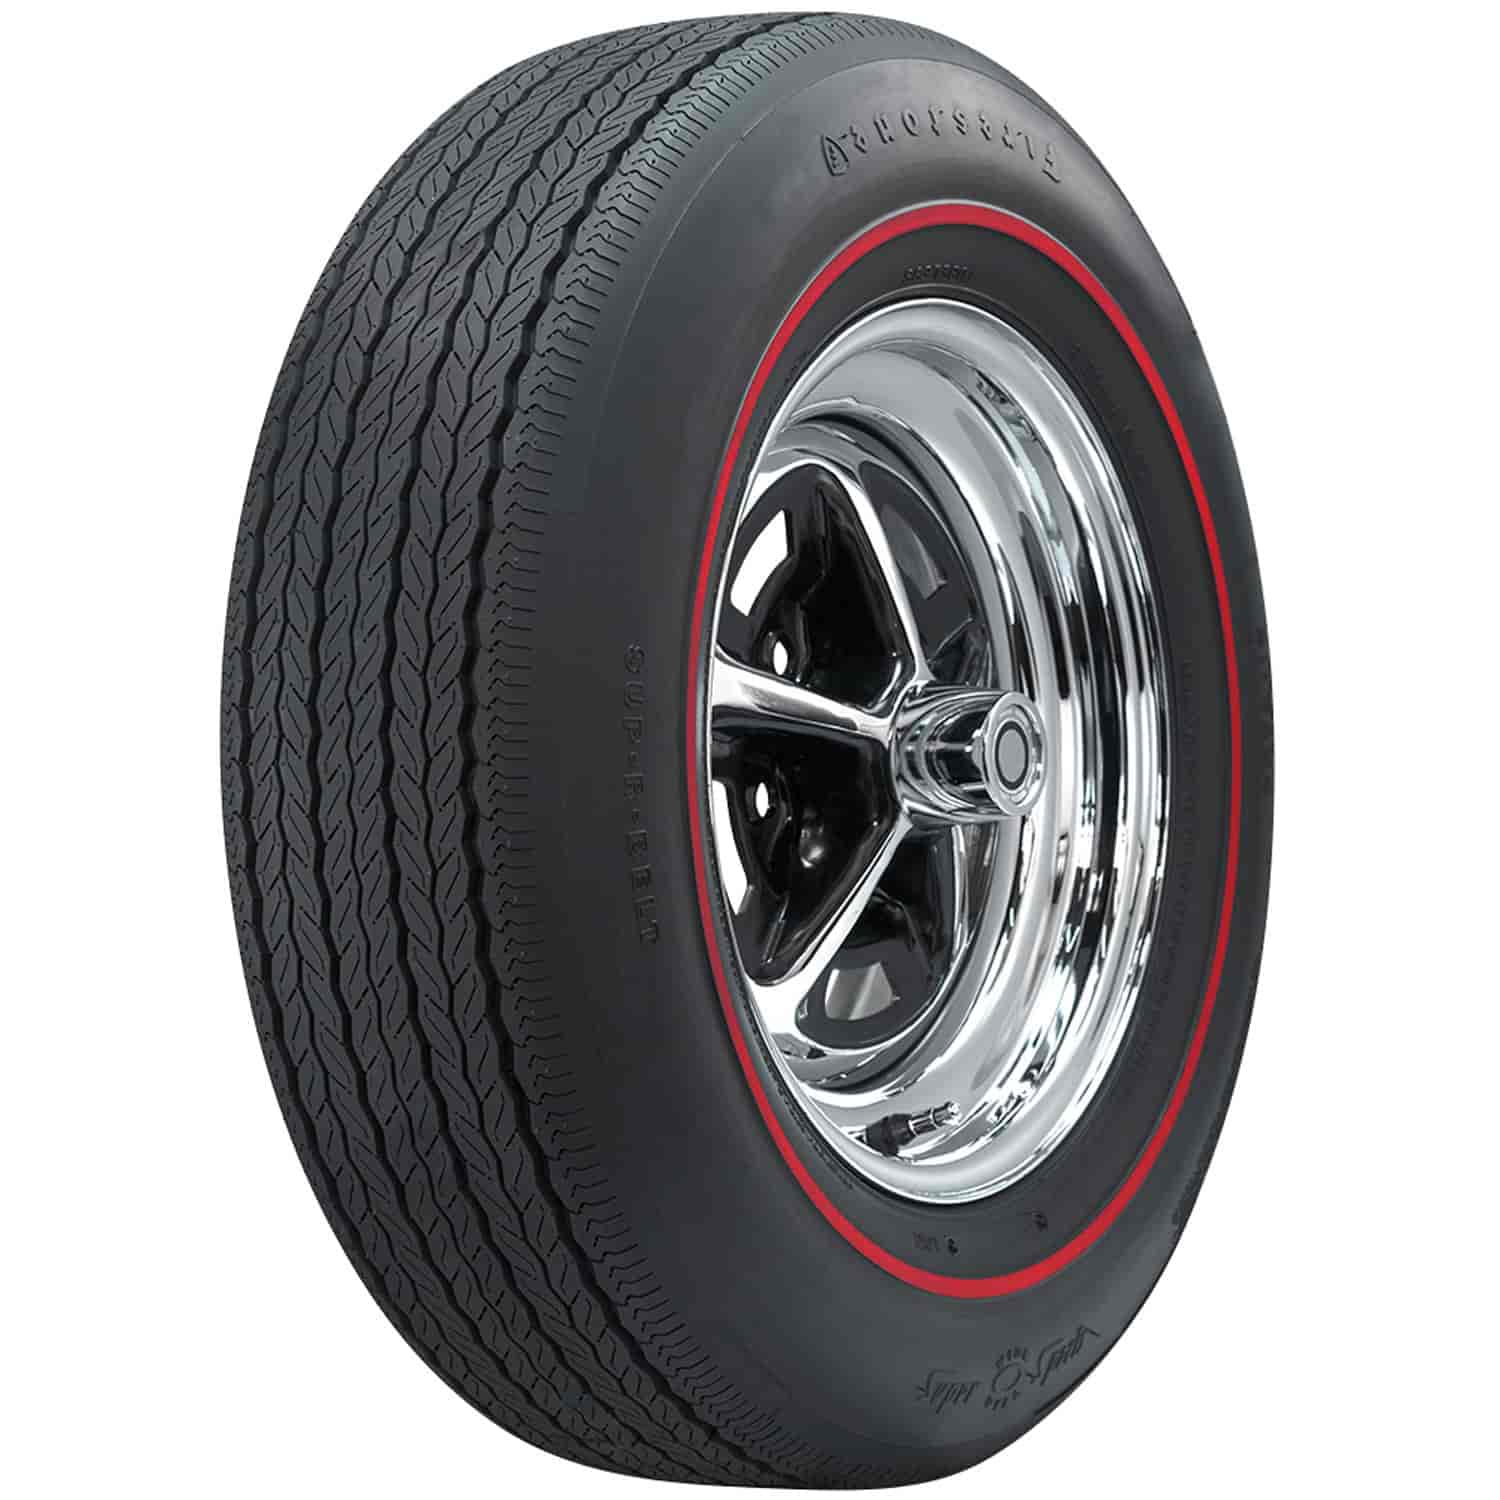 Firestone Wide Oval Radial Tire FR70-15